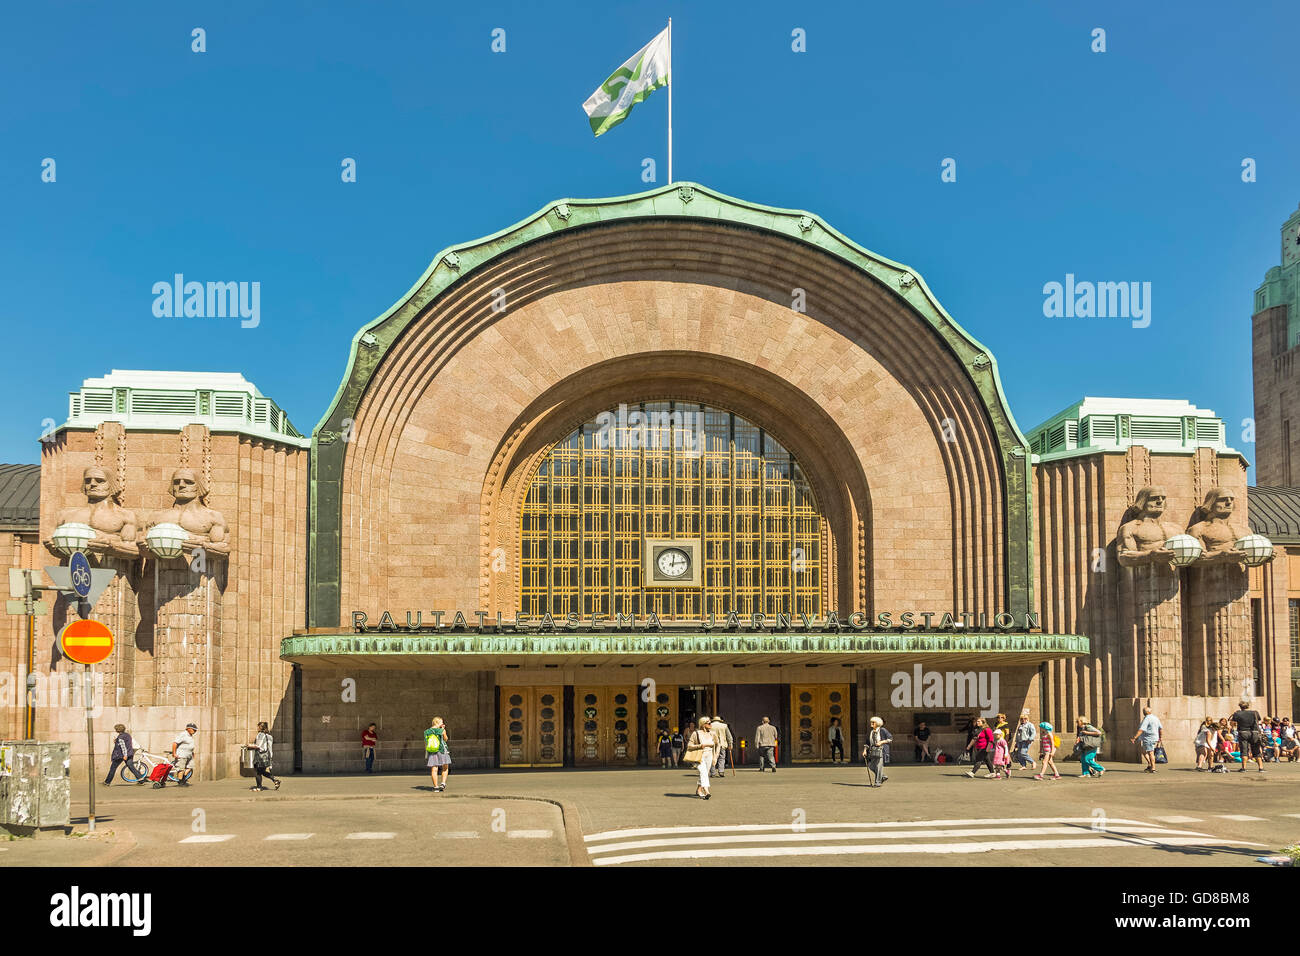 La gare centrale d'Helsinki Finlande Banque D'Images